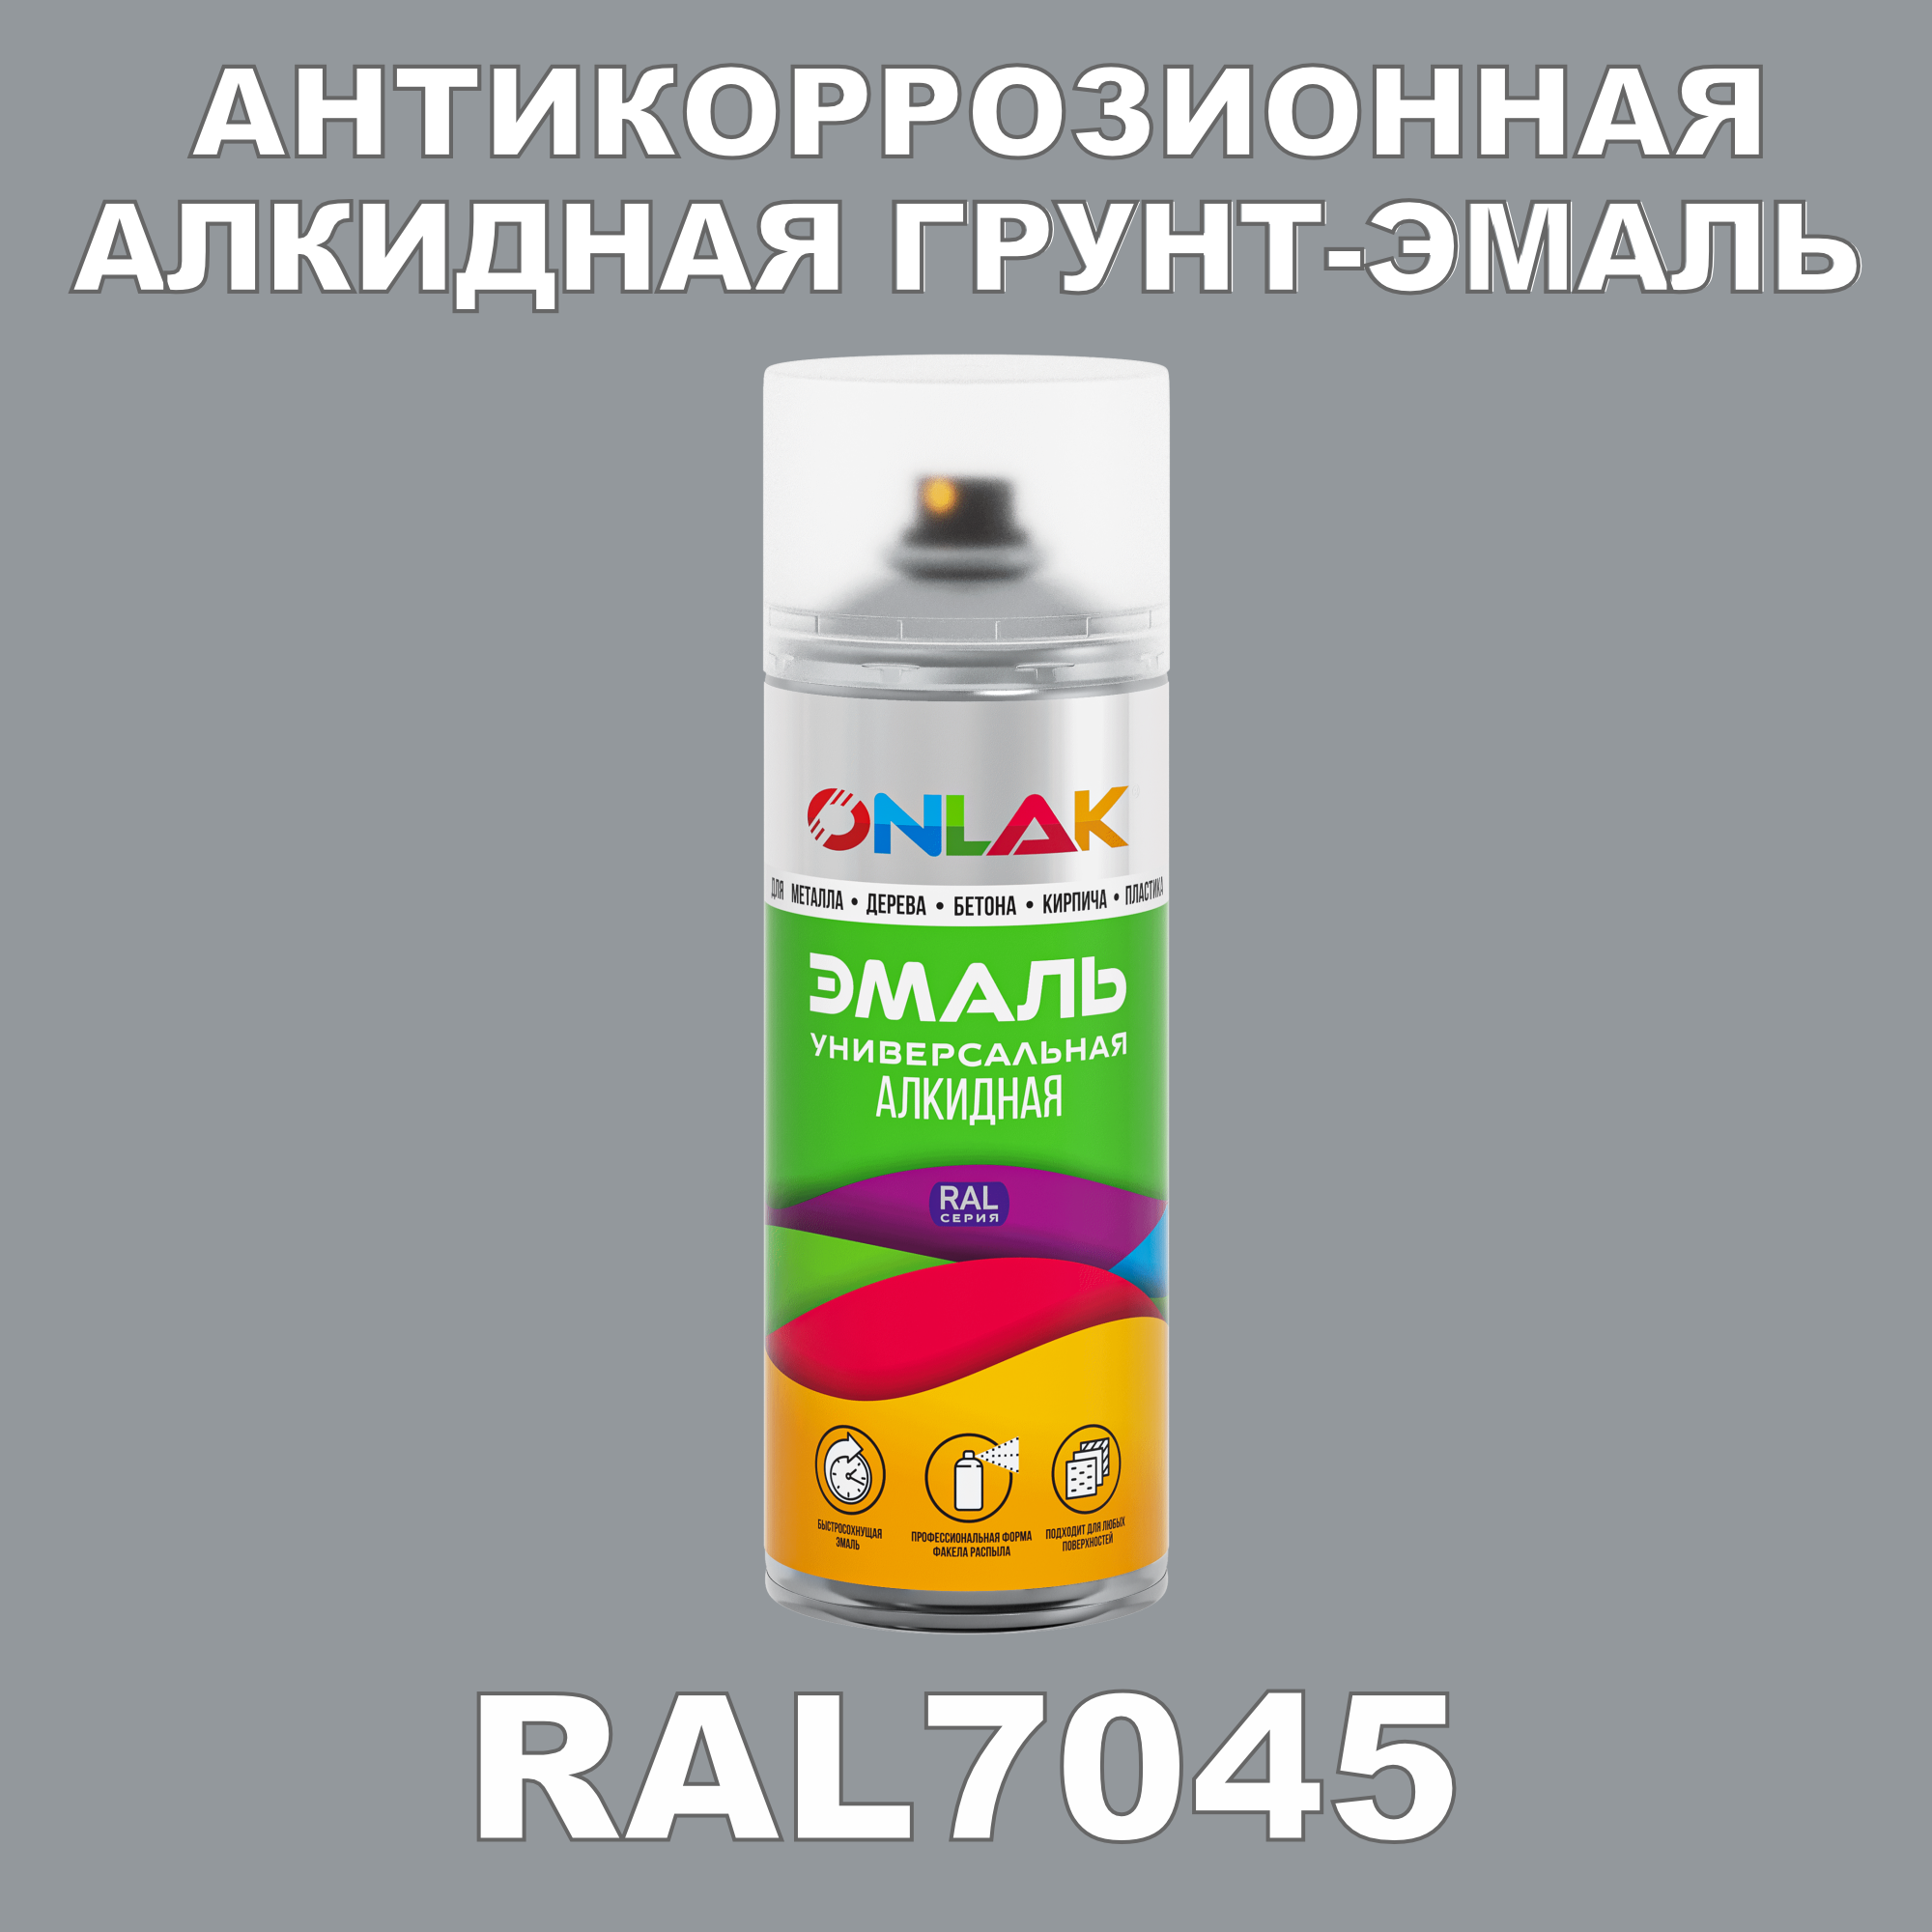 Антикоррозионная грунт-эмаль ONLAK RAL7045 матовая для металла и защиты от ржавчины